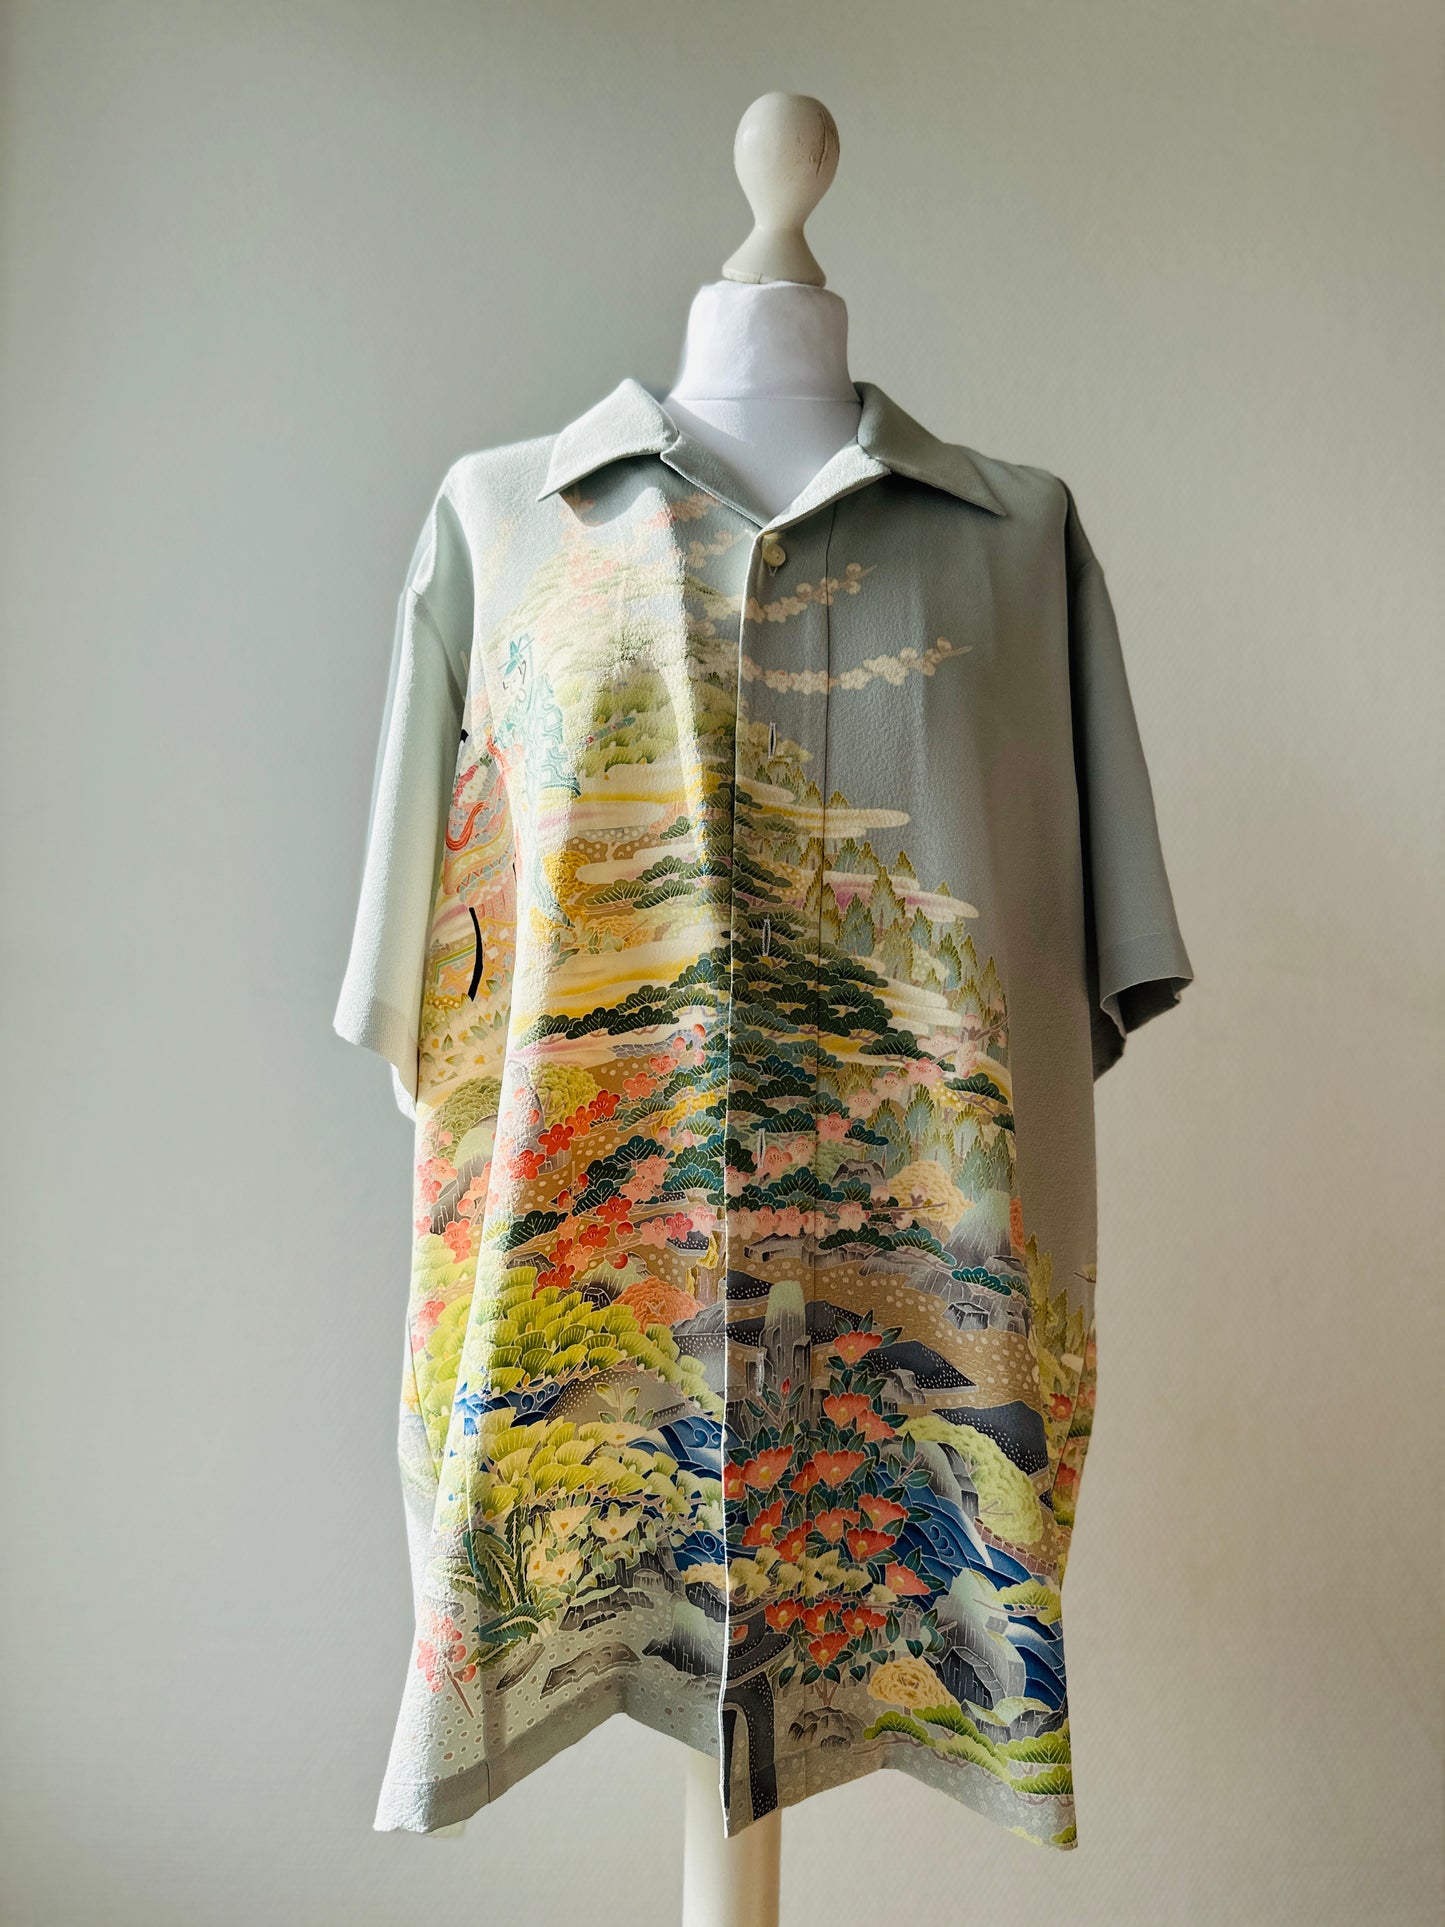 【Gris clair, jardin heureux】 chemise / taille hawaïenne: 2L ＜ Nouveau ・ Soil ＞ pour les hommes, pour les femmes, le kimono japonais, les vêtements unisexes du Japon, l'unisexe, les cadeaux japonais, l'article original